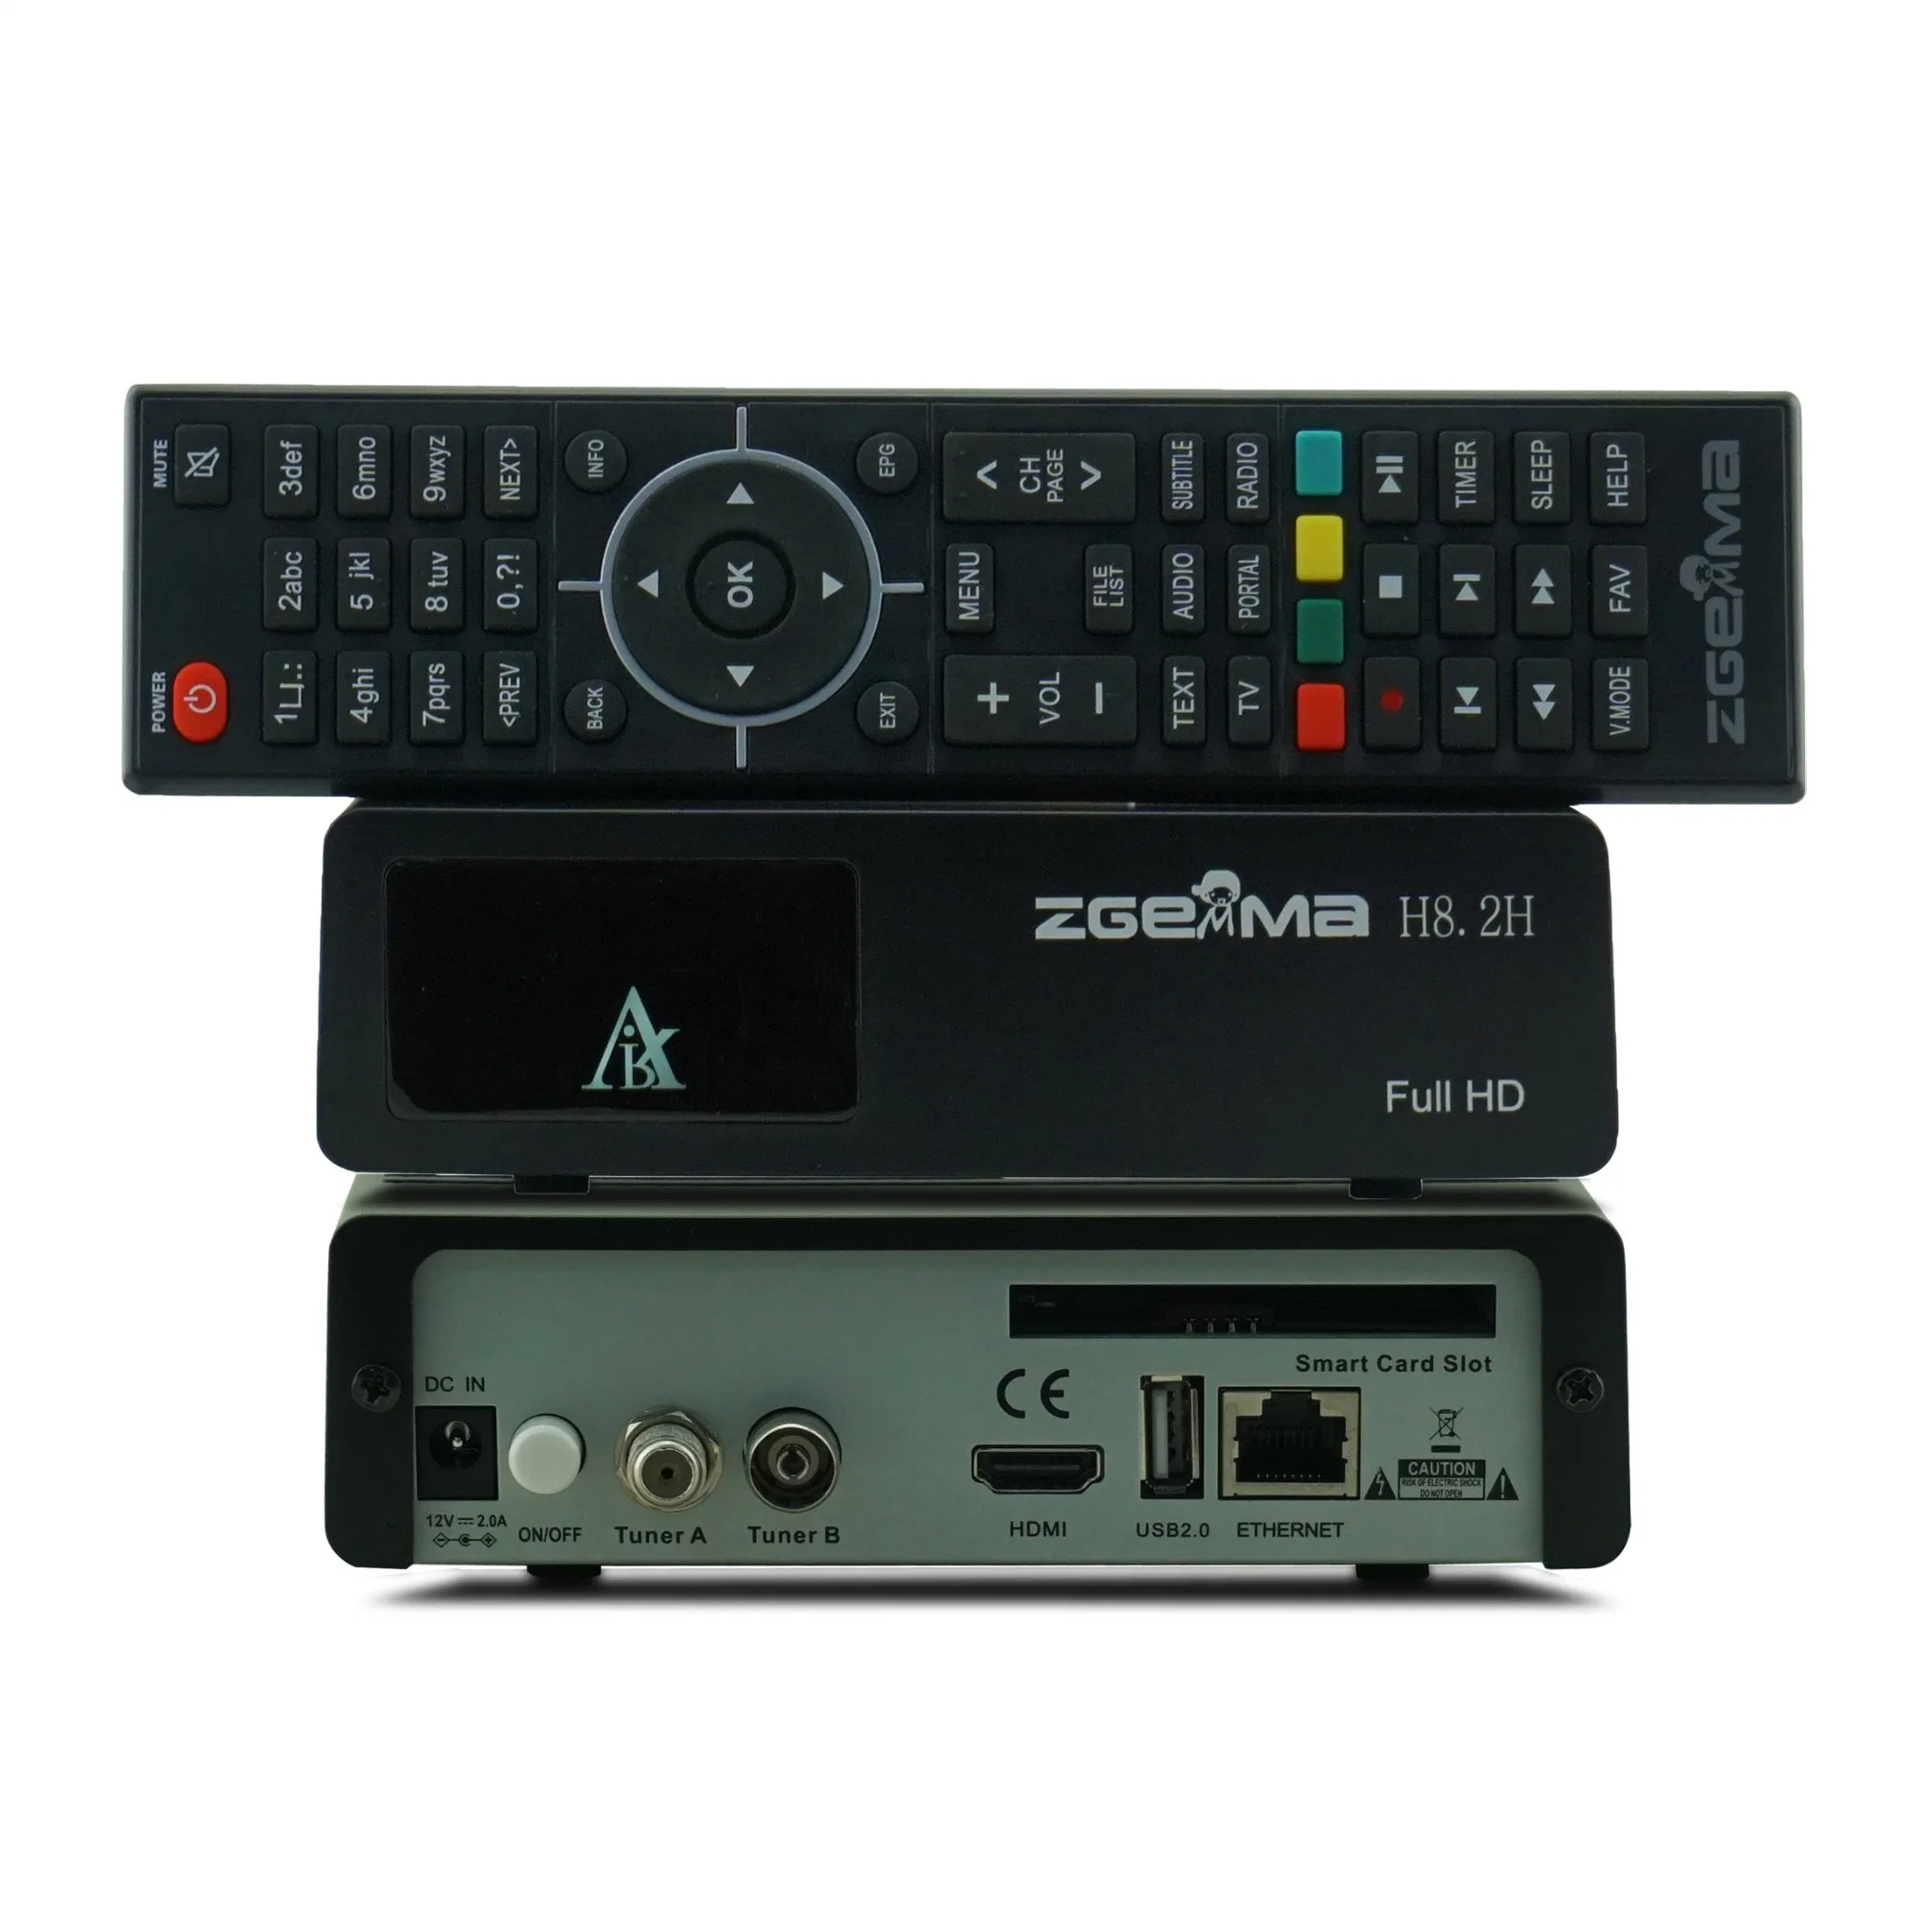 Linux OS Zgemma H8.2h TV Box DVB-S2X + DVB-T2/C Combo Tuner Built-in